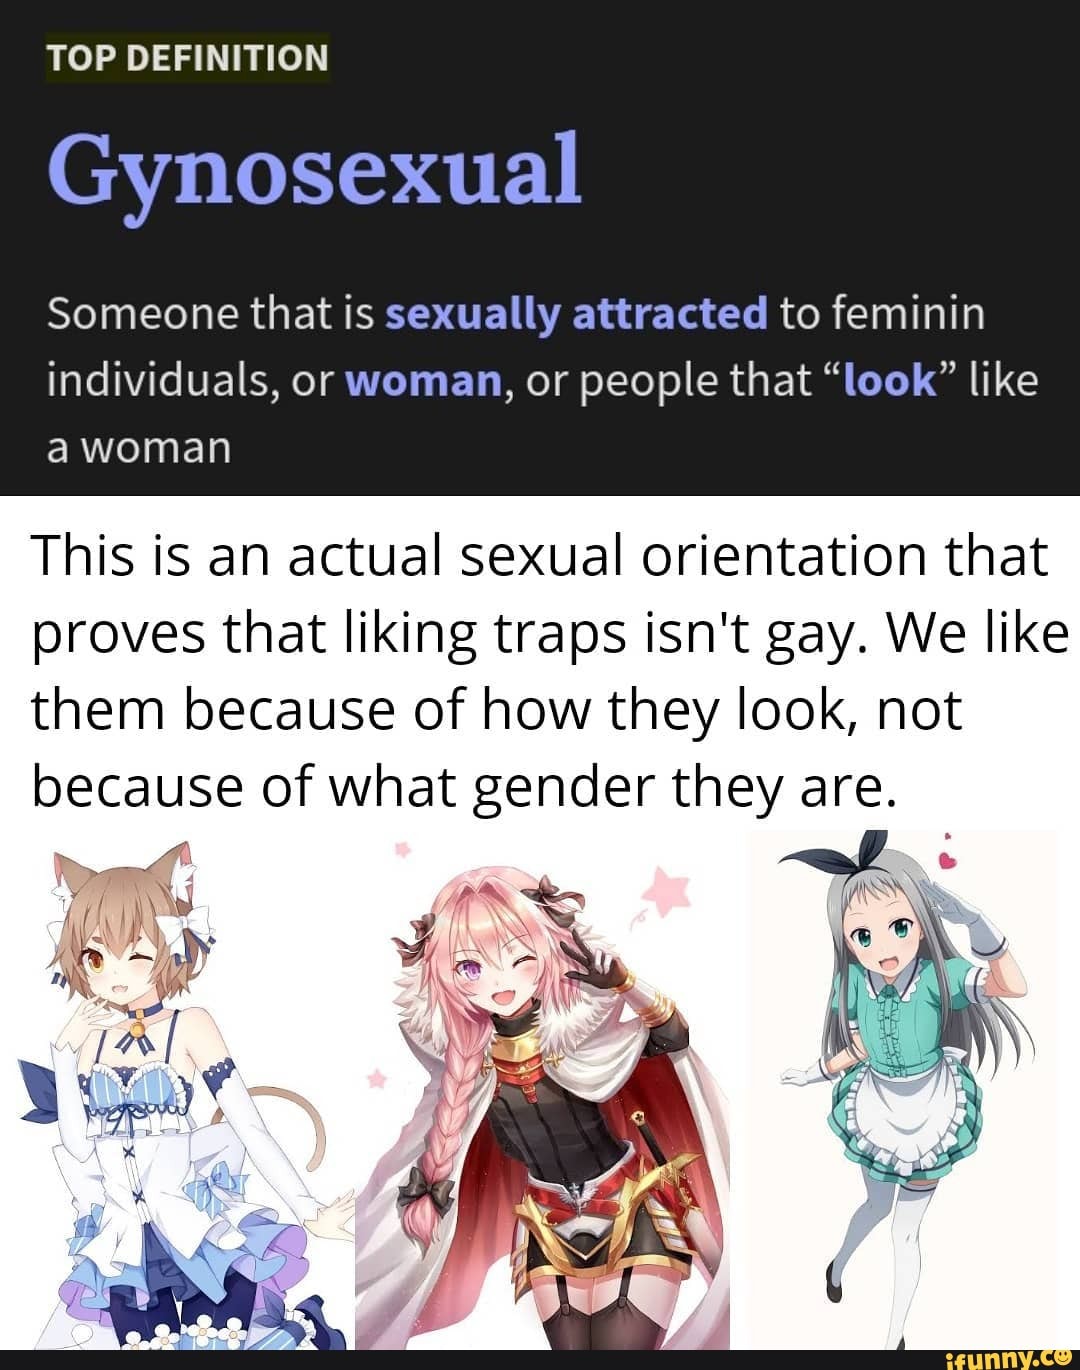 am i gay if i like traps